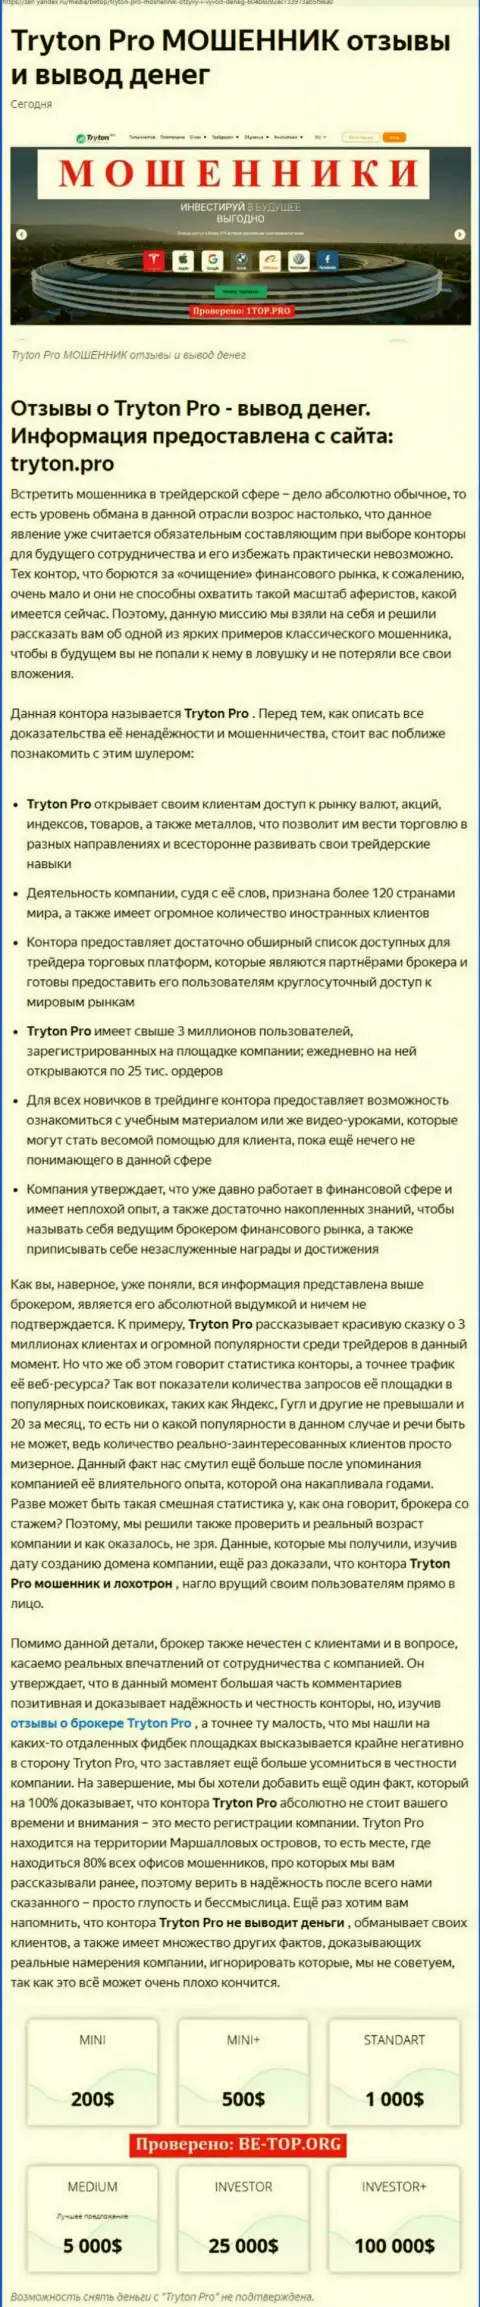 О вложенных в организацию TrytonPro накоплениях можете и не вспоминать, крадут все до последнего рубля (обзор противозаконных деяний)